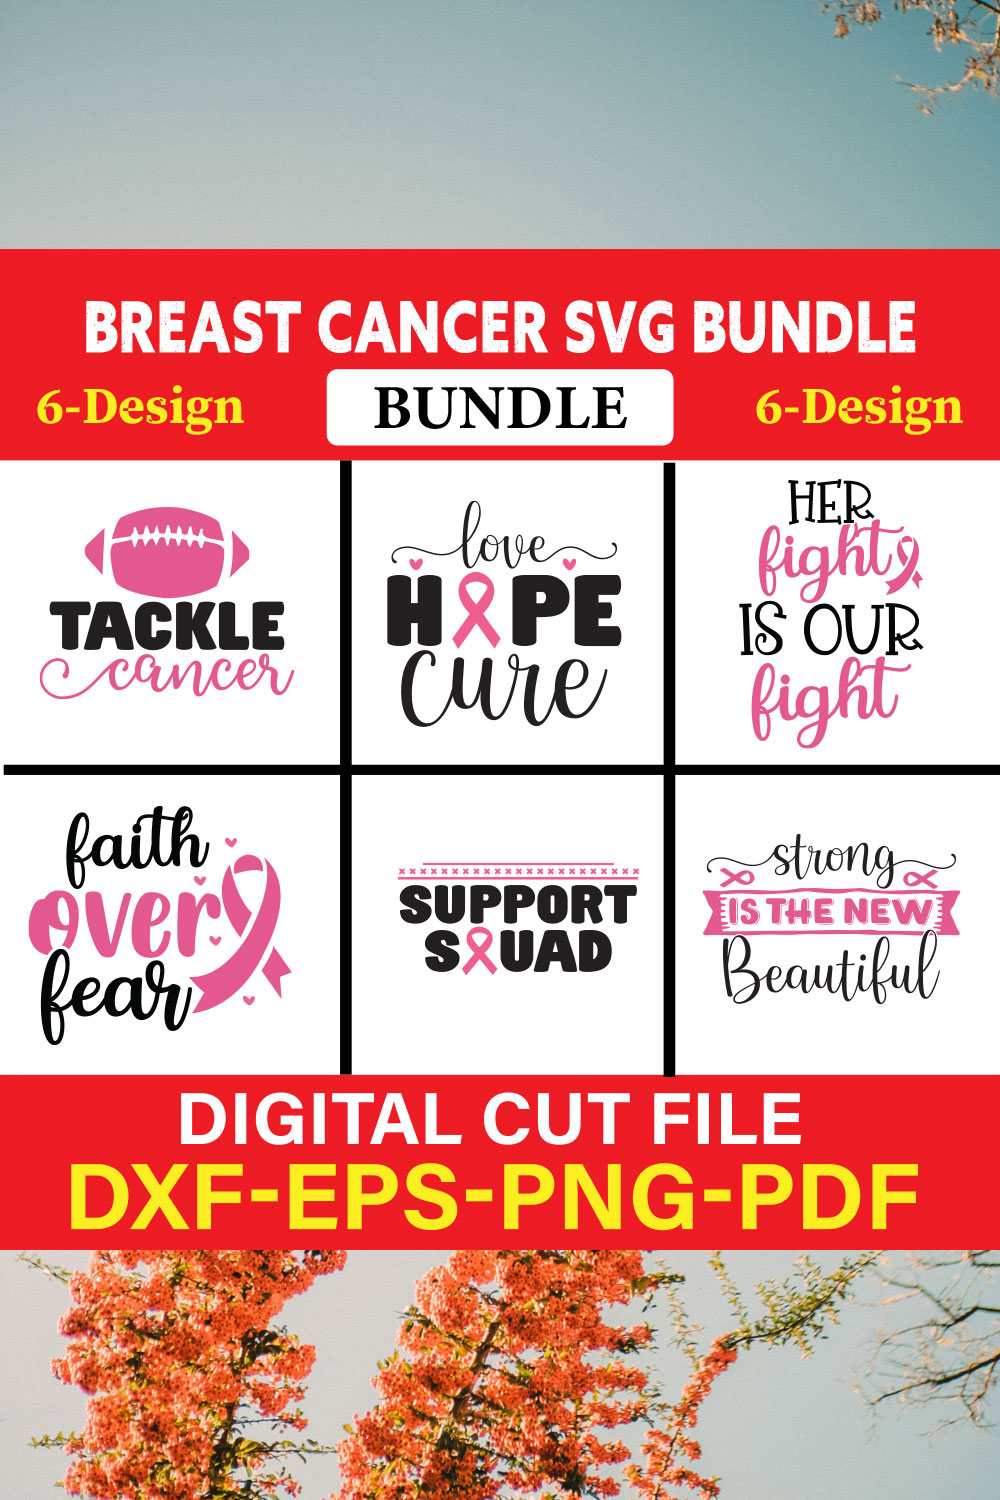 Breast Cancer SVG Bundle, Cancer SVG, Cancer Awareness, Vol-05 pinterest preview image.